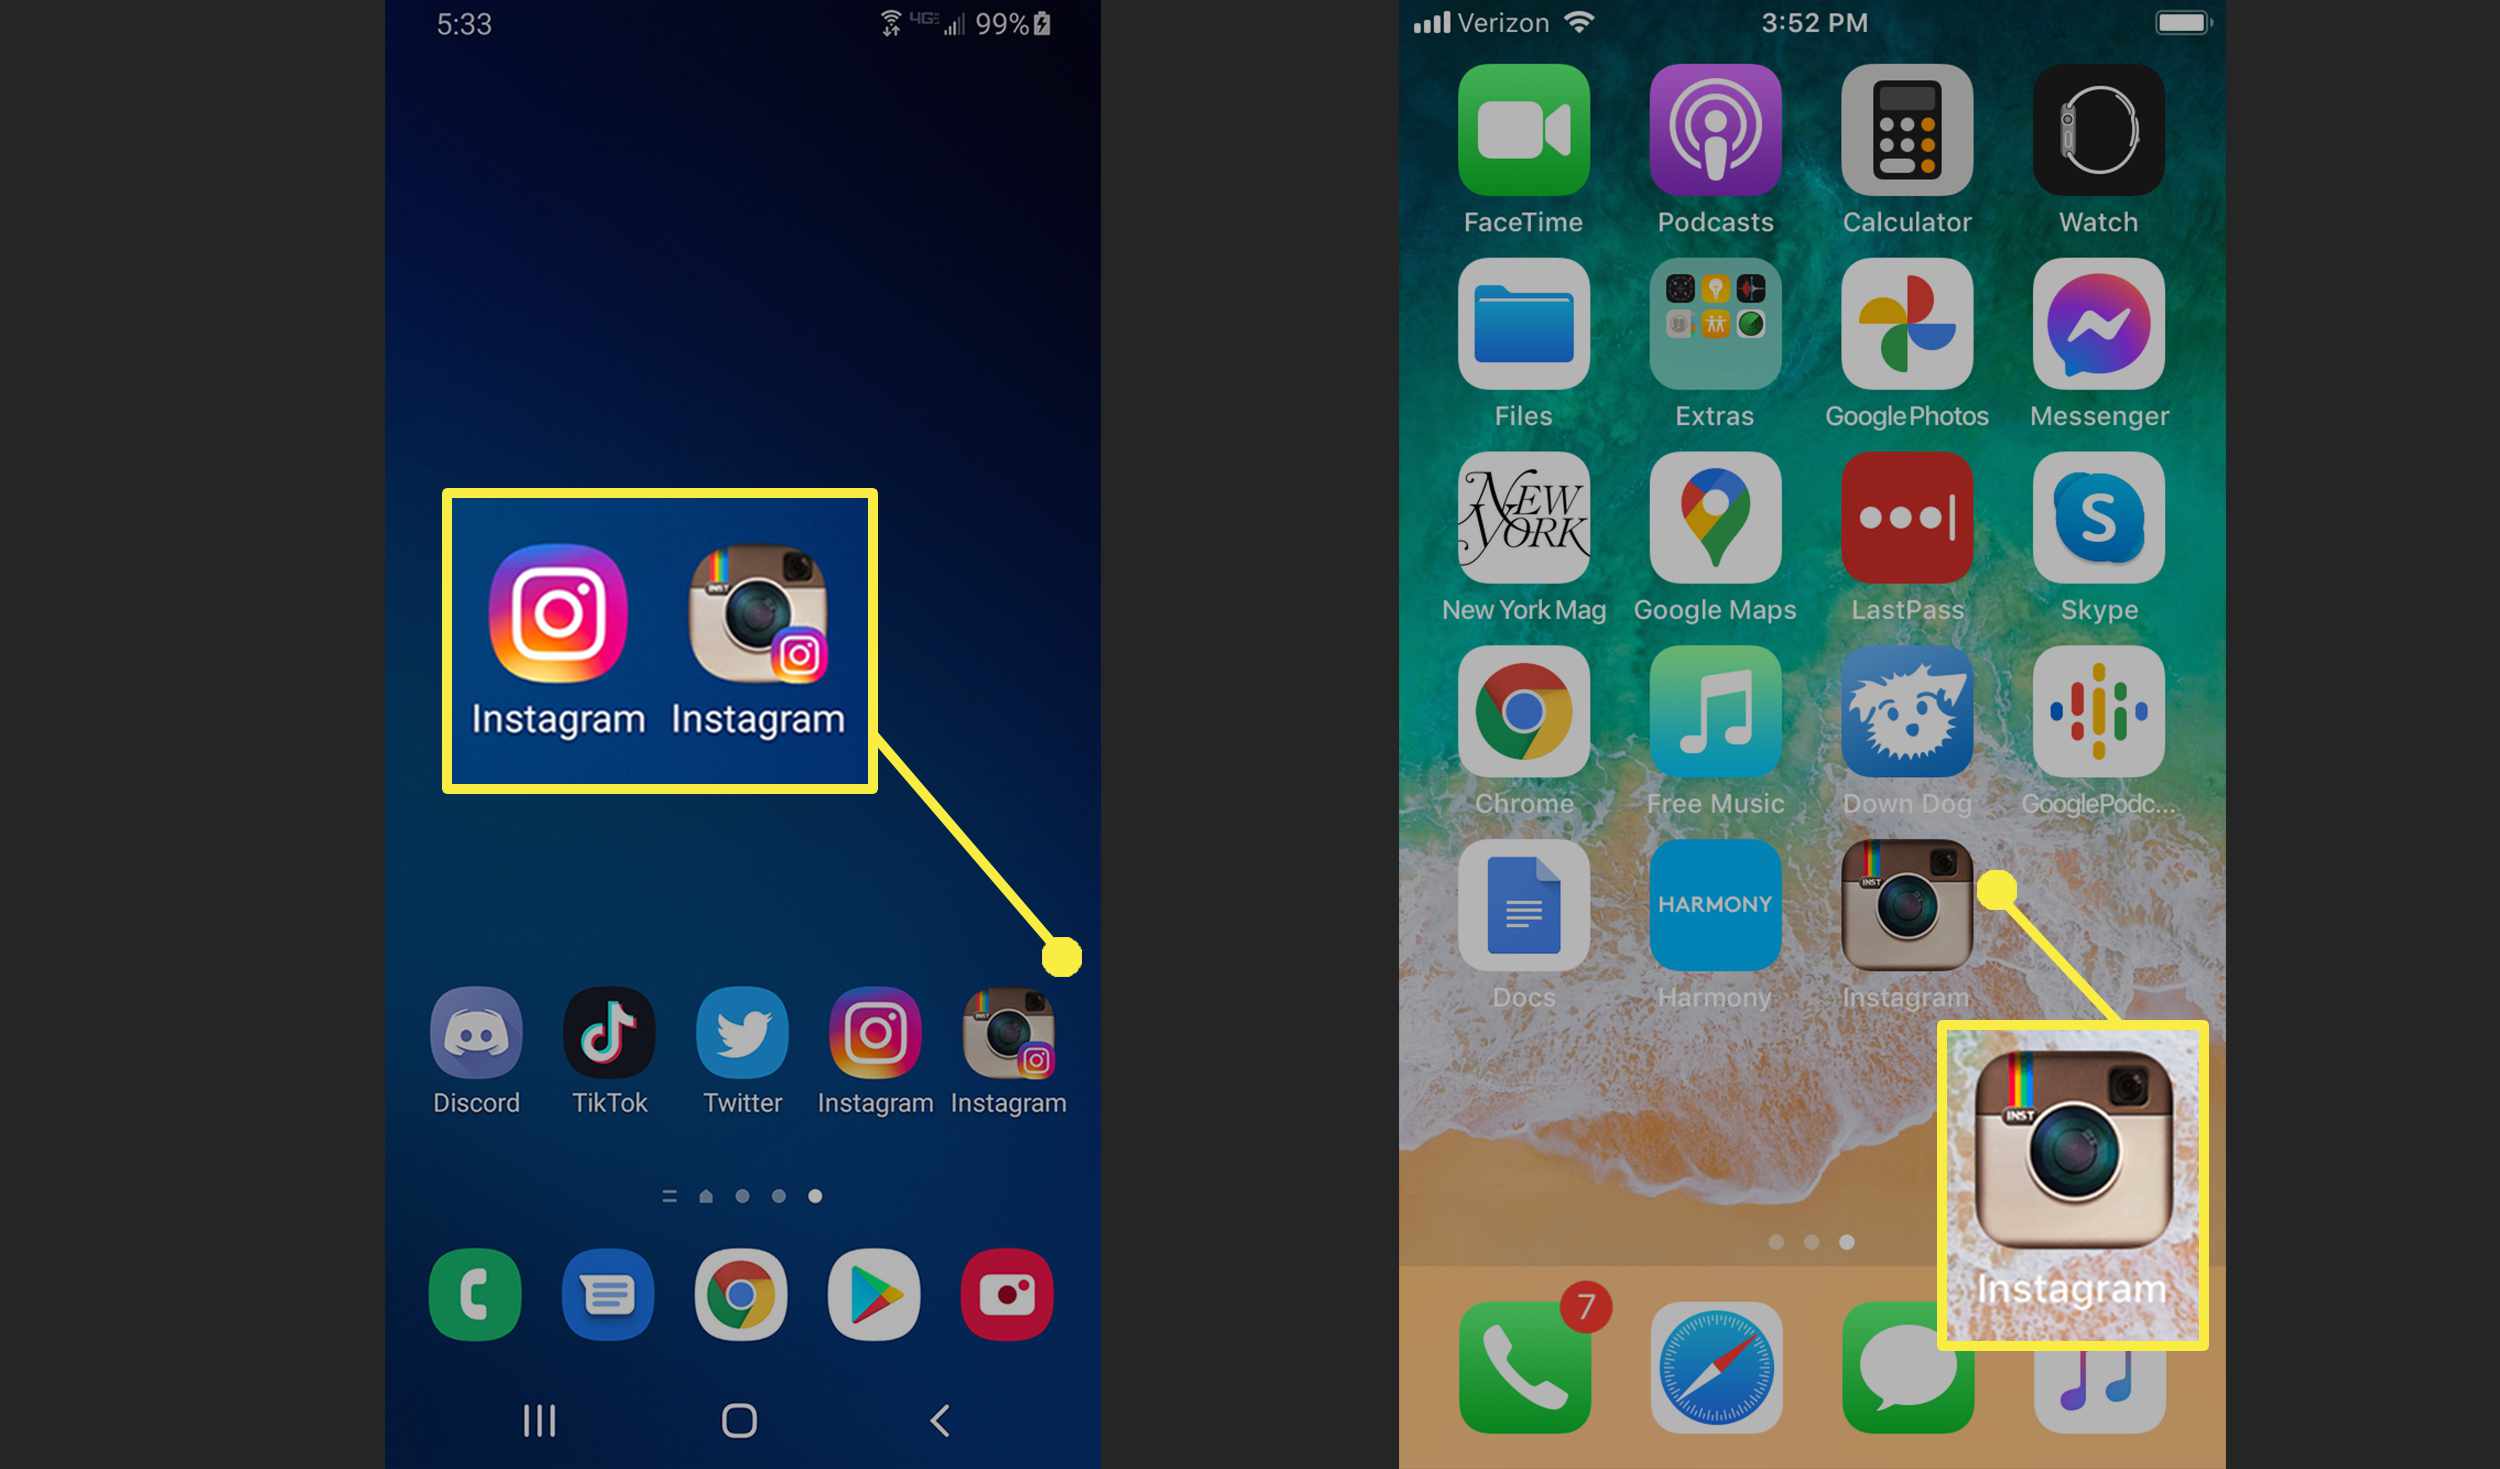 Domovské obrazovky Android a iPhone s návratovou ikonou aplikace Instagram.